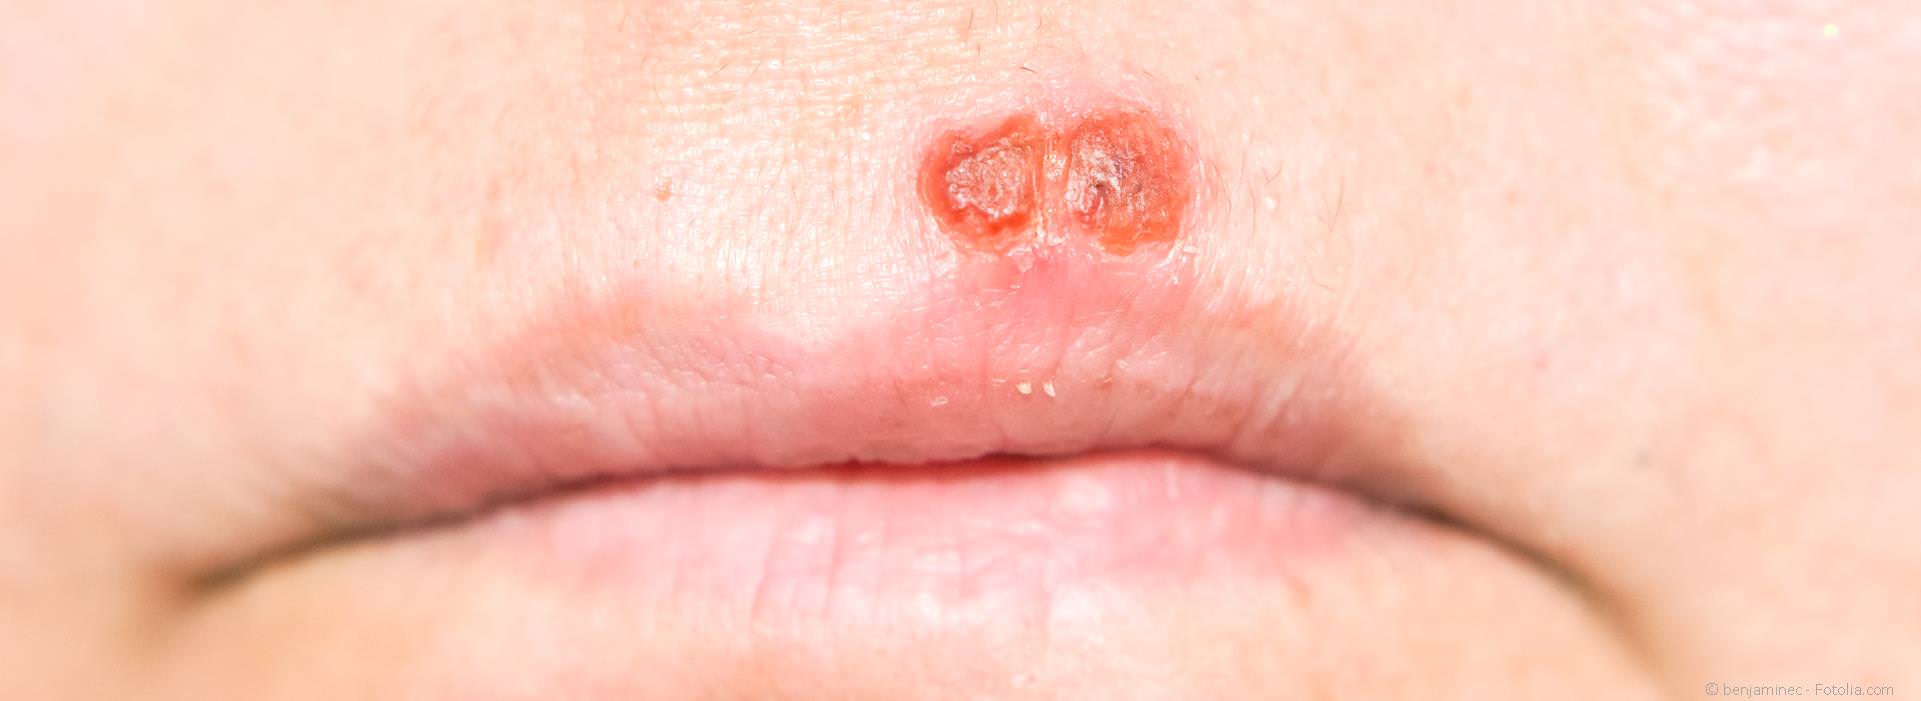 Probleme mit Lippen-Herpes und Aphthen?